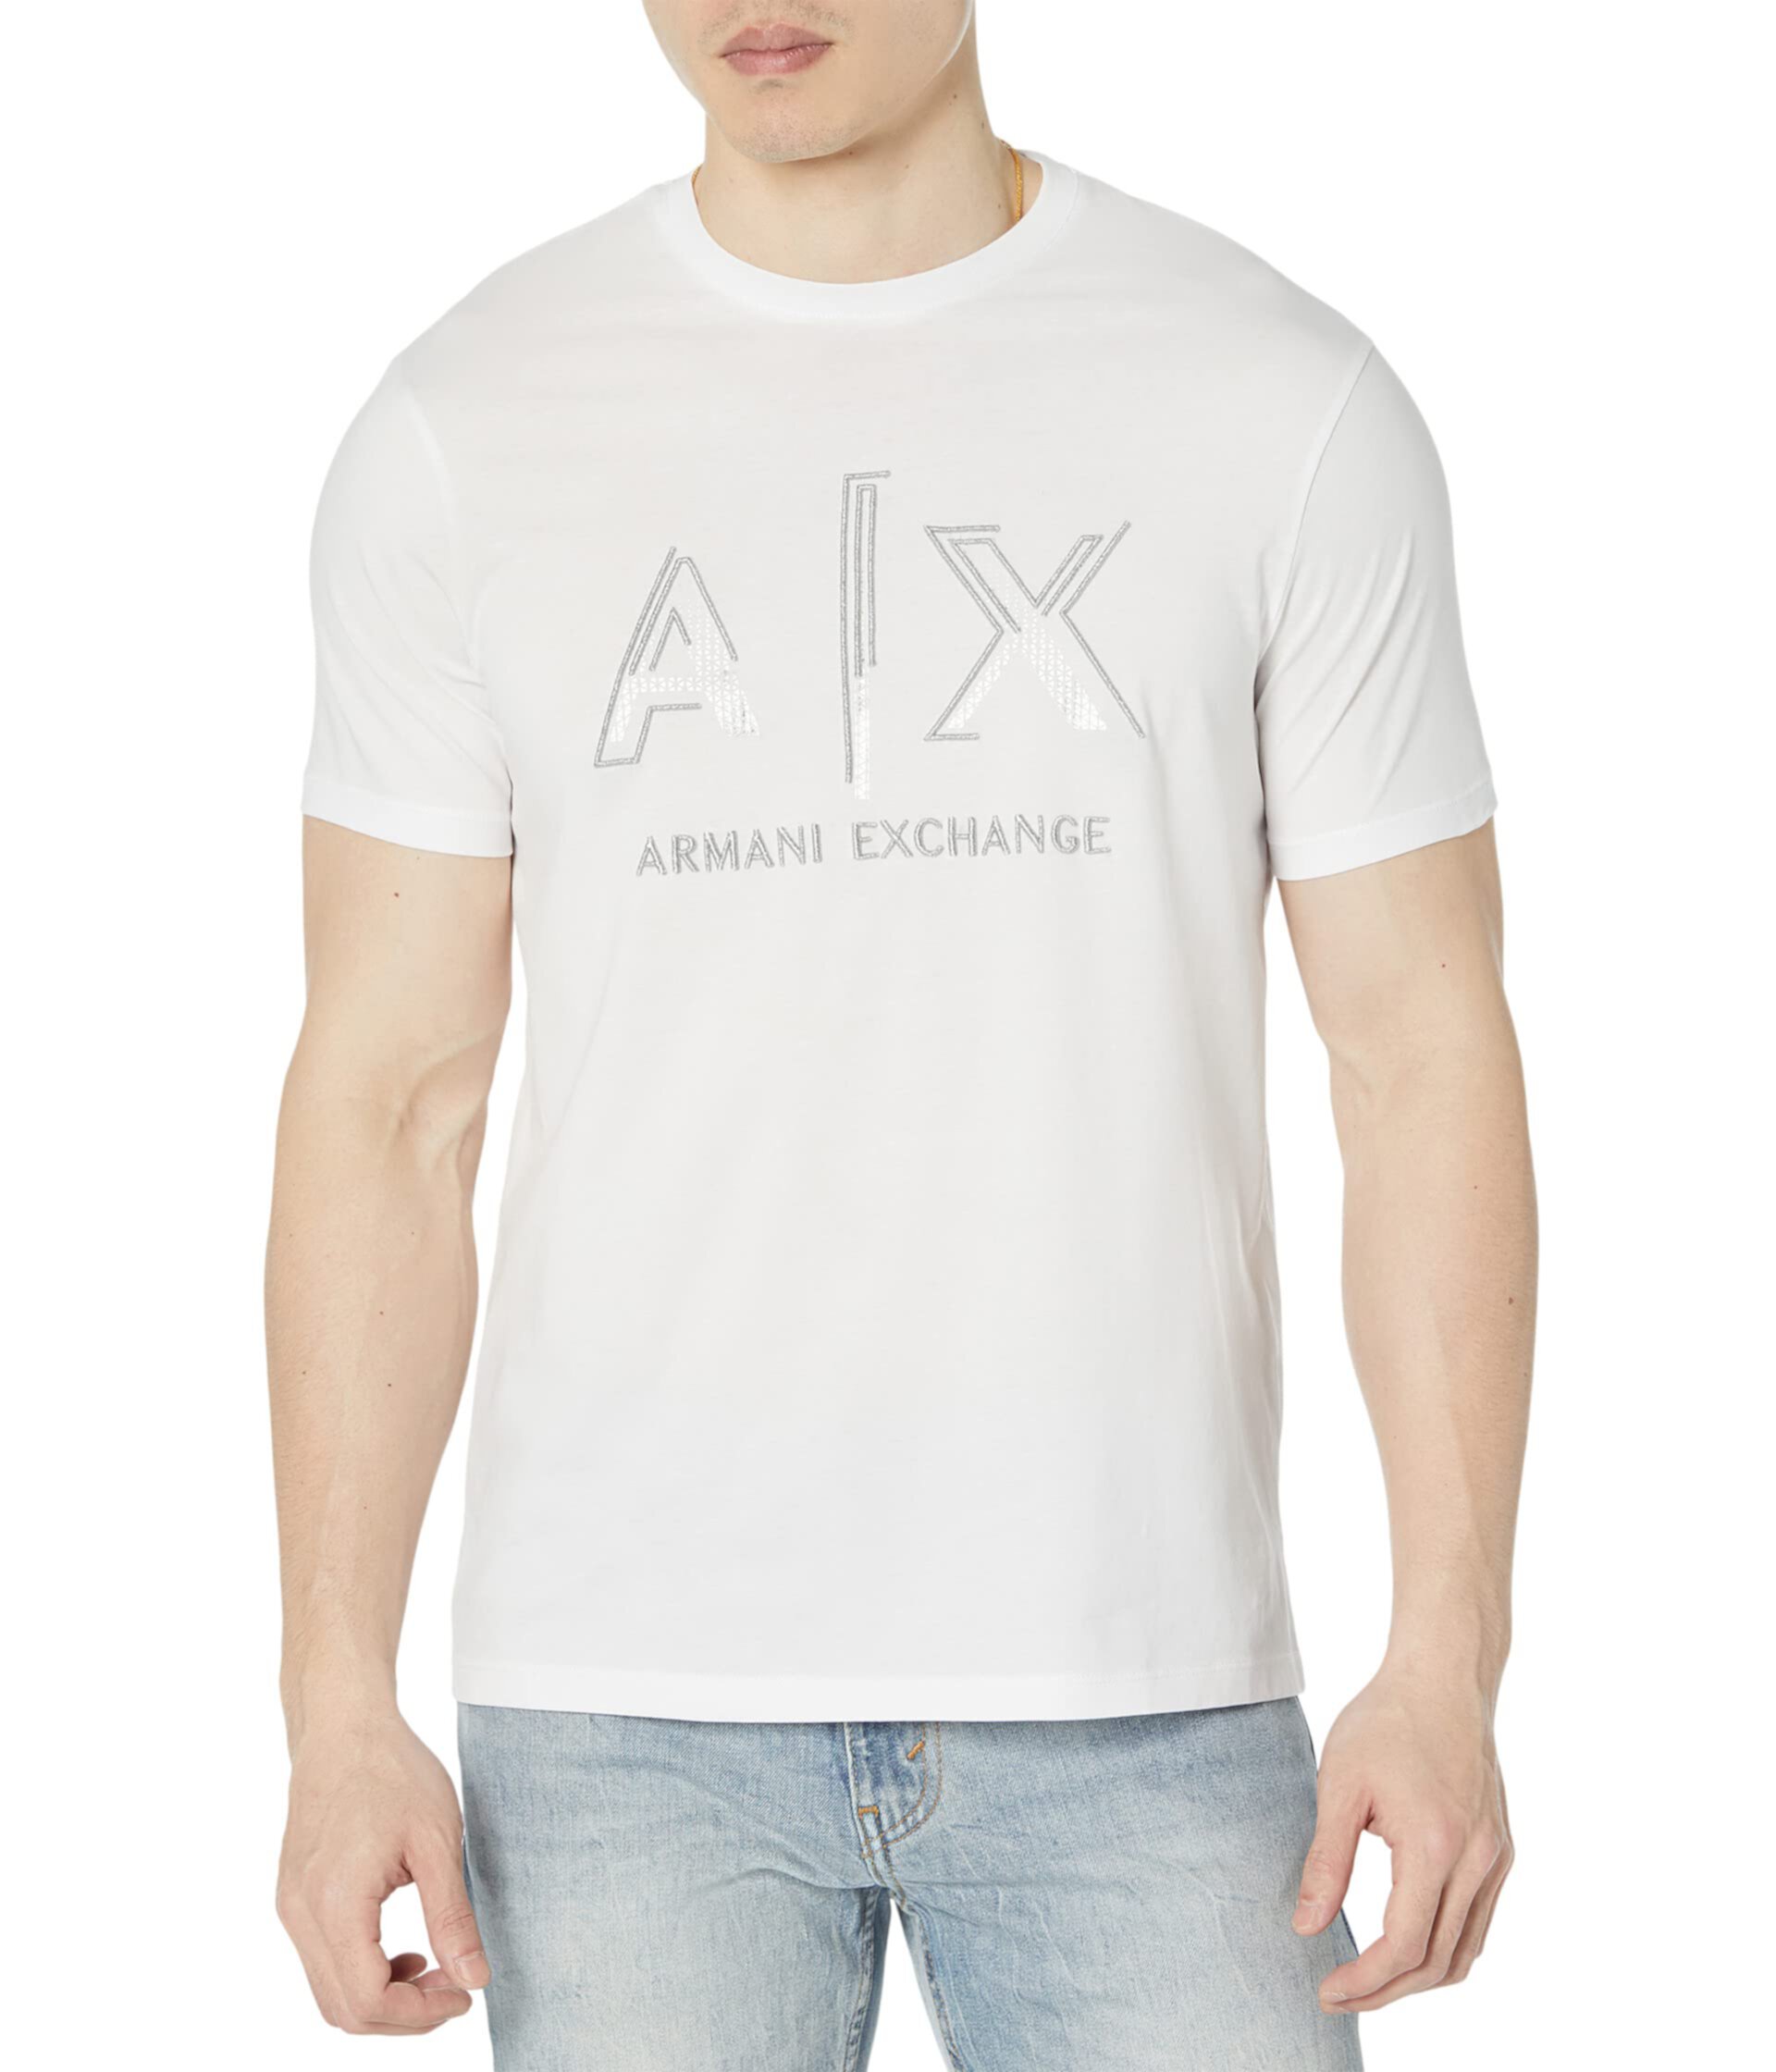 Футболка с логотипом AXE AX ARMANI EXCHANGE